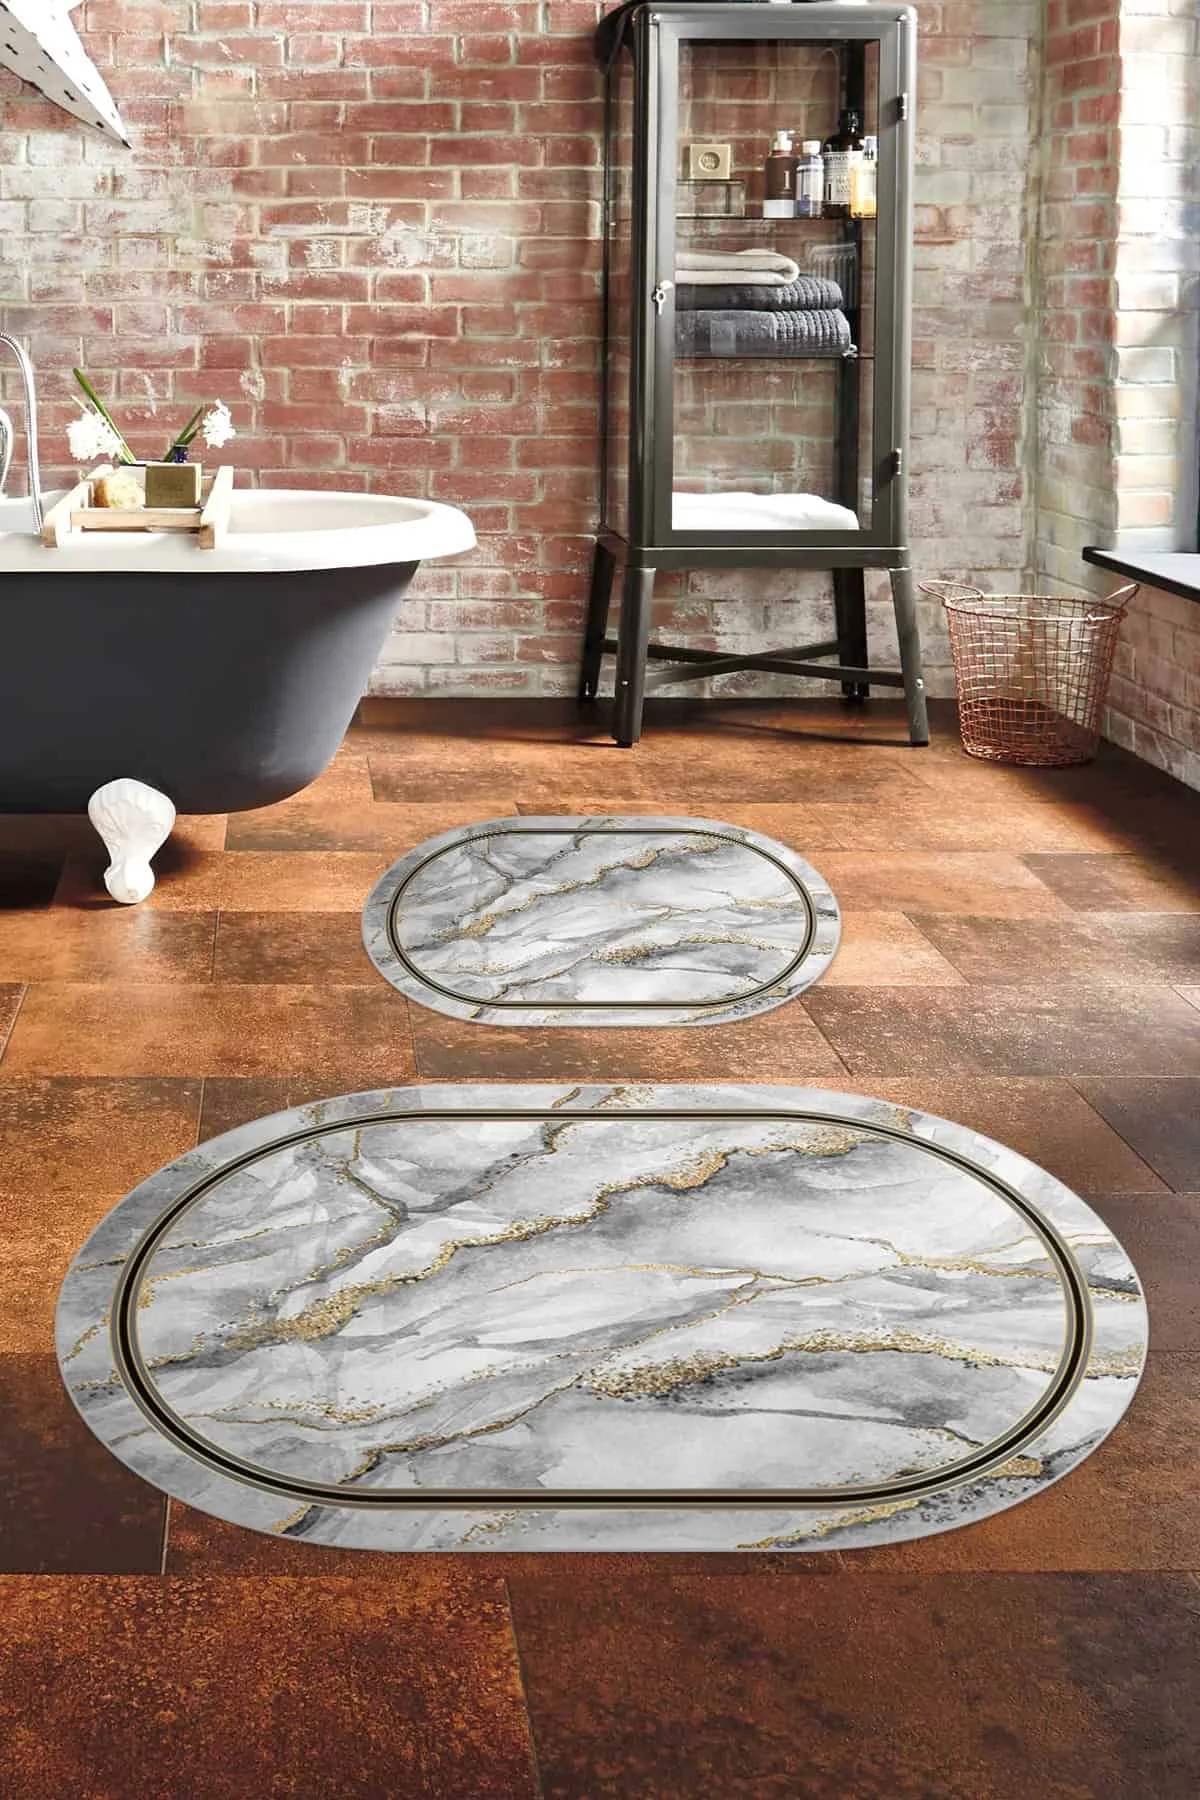 

Коврик для ванной Овальный серый золотой мраморный рисунок для ванной комнаты Набор из 2 предметов нескользящий домашний Декор современный мягкий бамбуковый пол